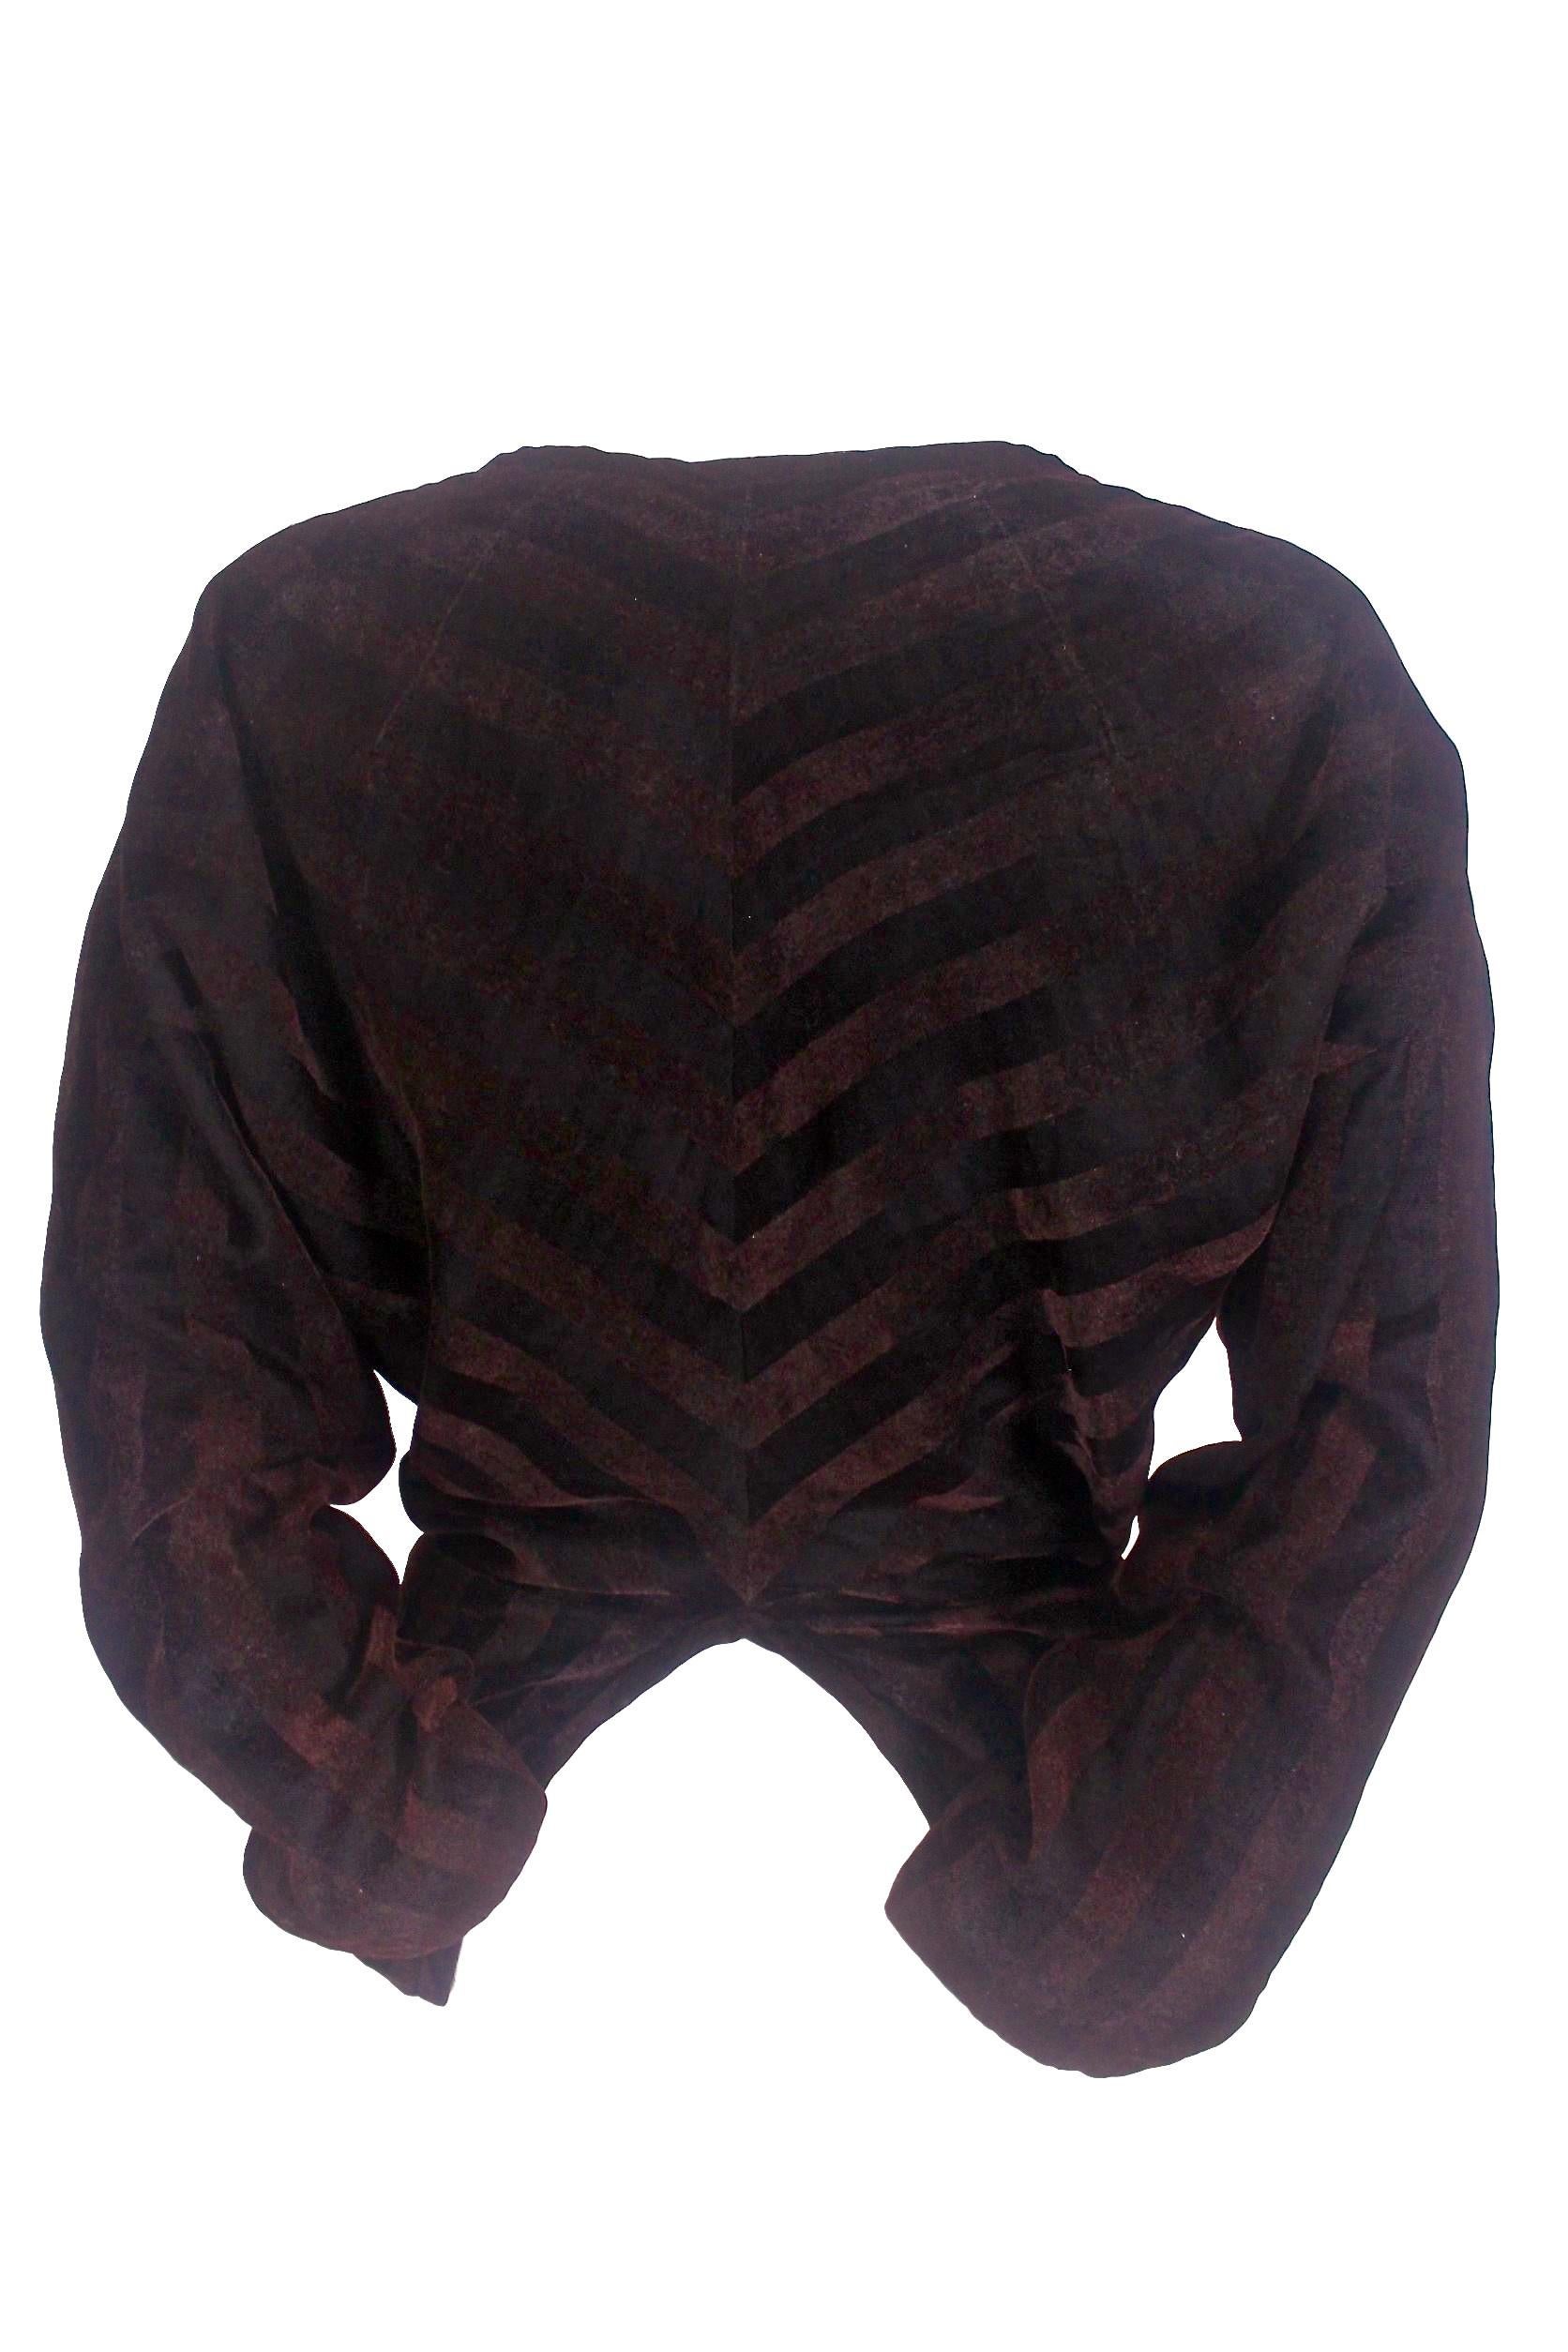 Comme des Garcons Split Collar Velvet Jacket 1990 For Sale 6